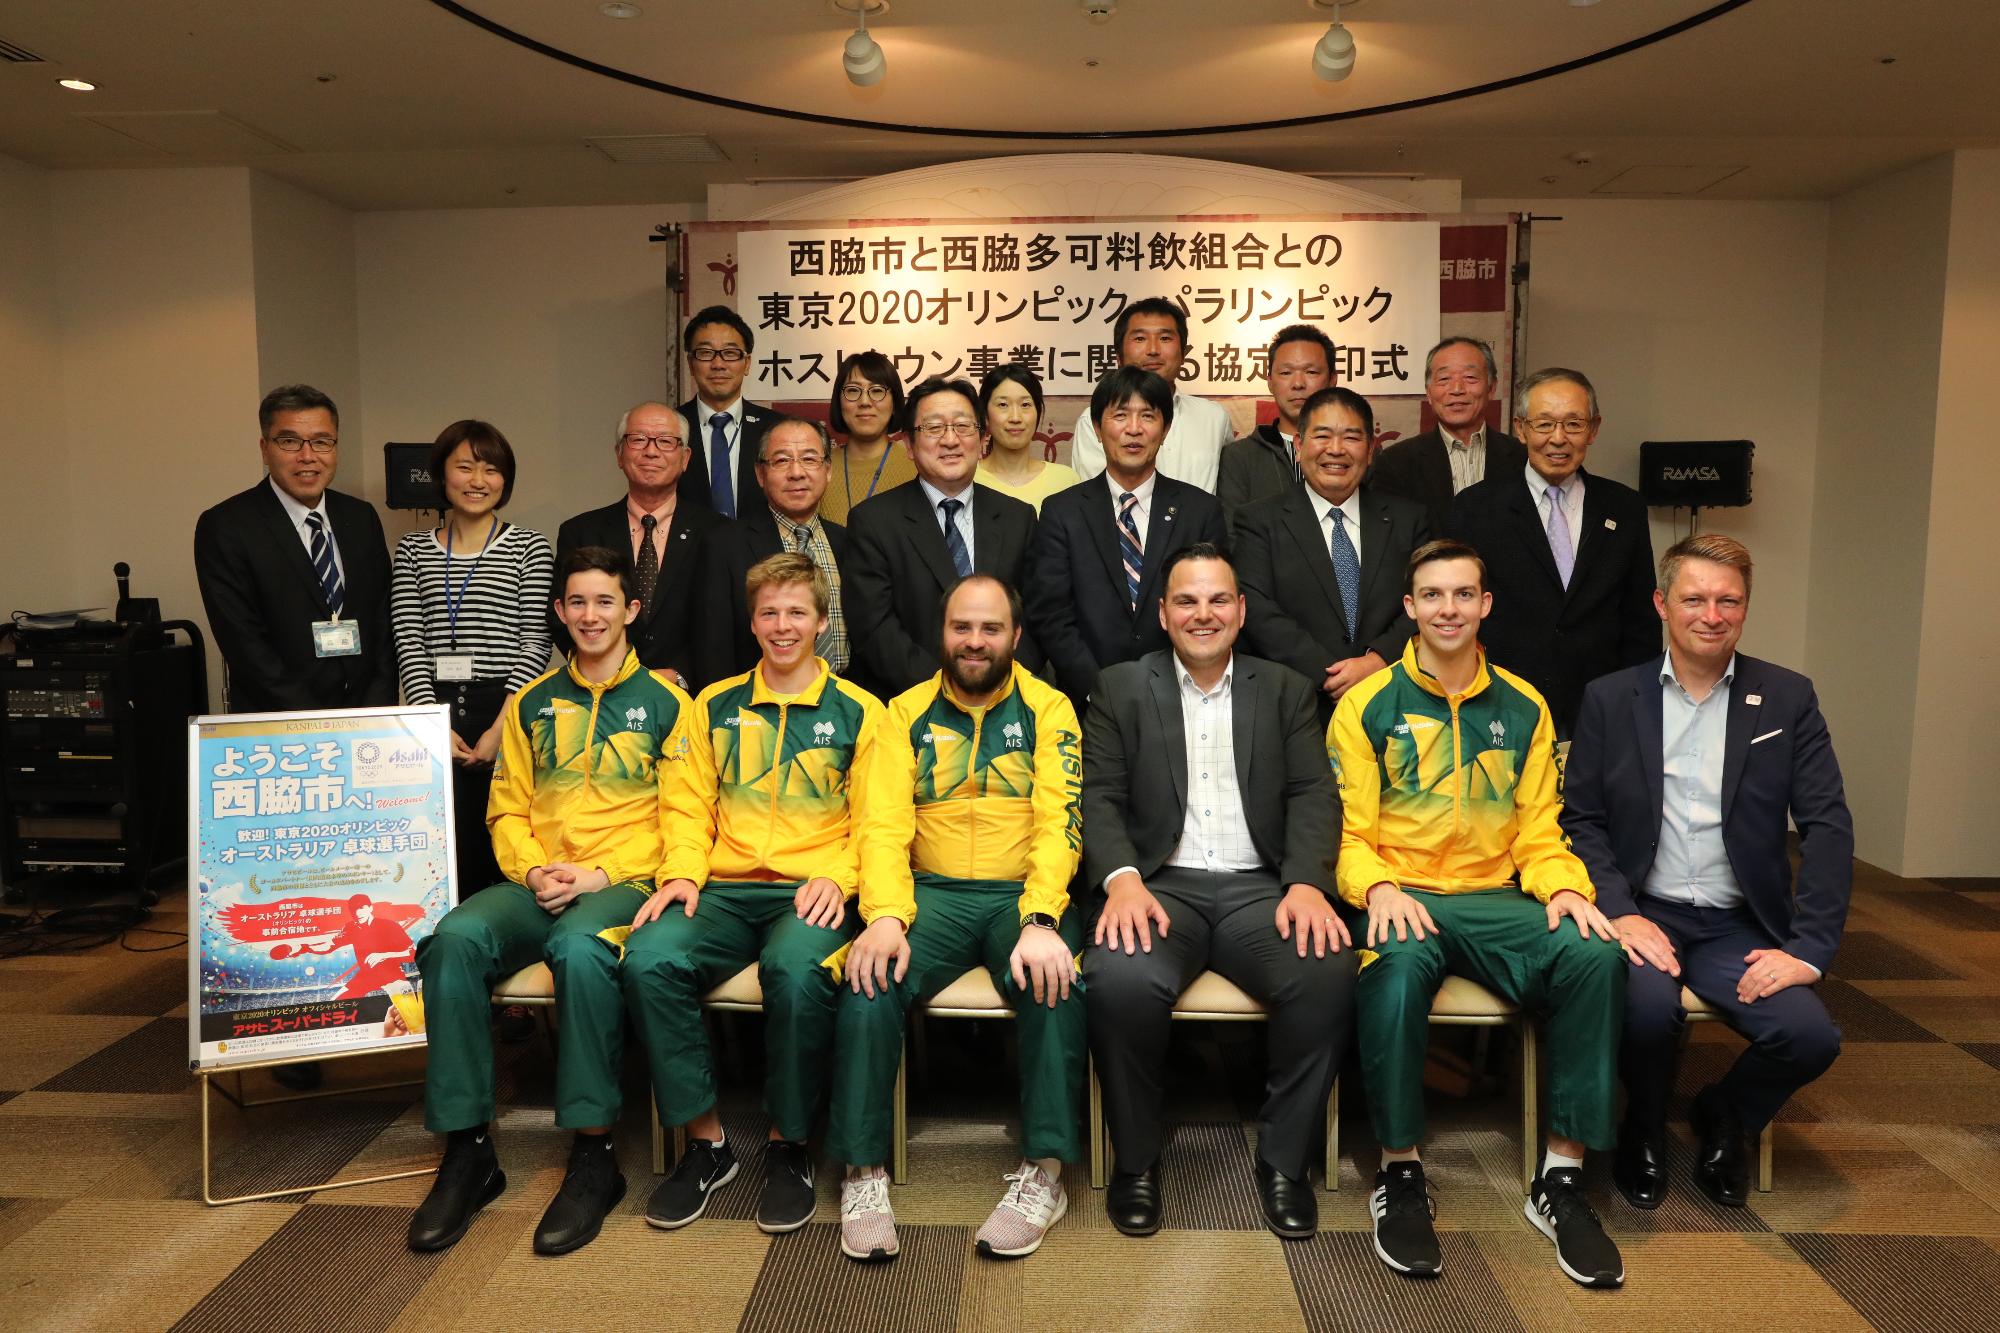 オーストラリア卓球選手団と料飲組合の方々との記念写真